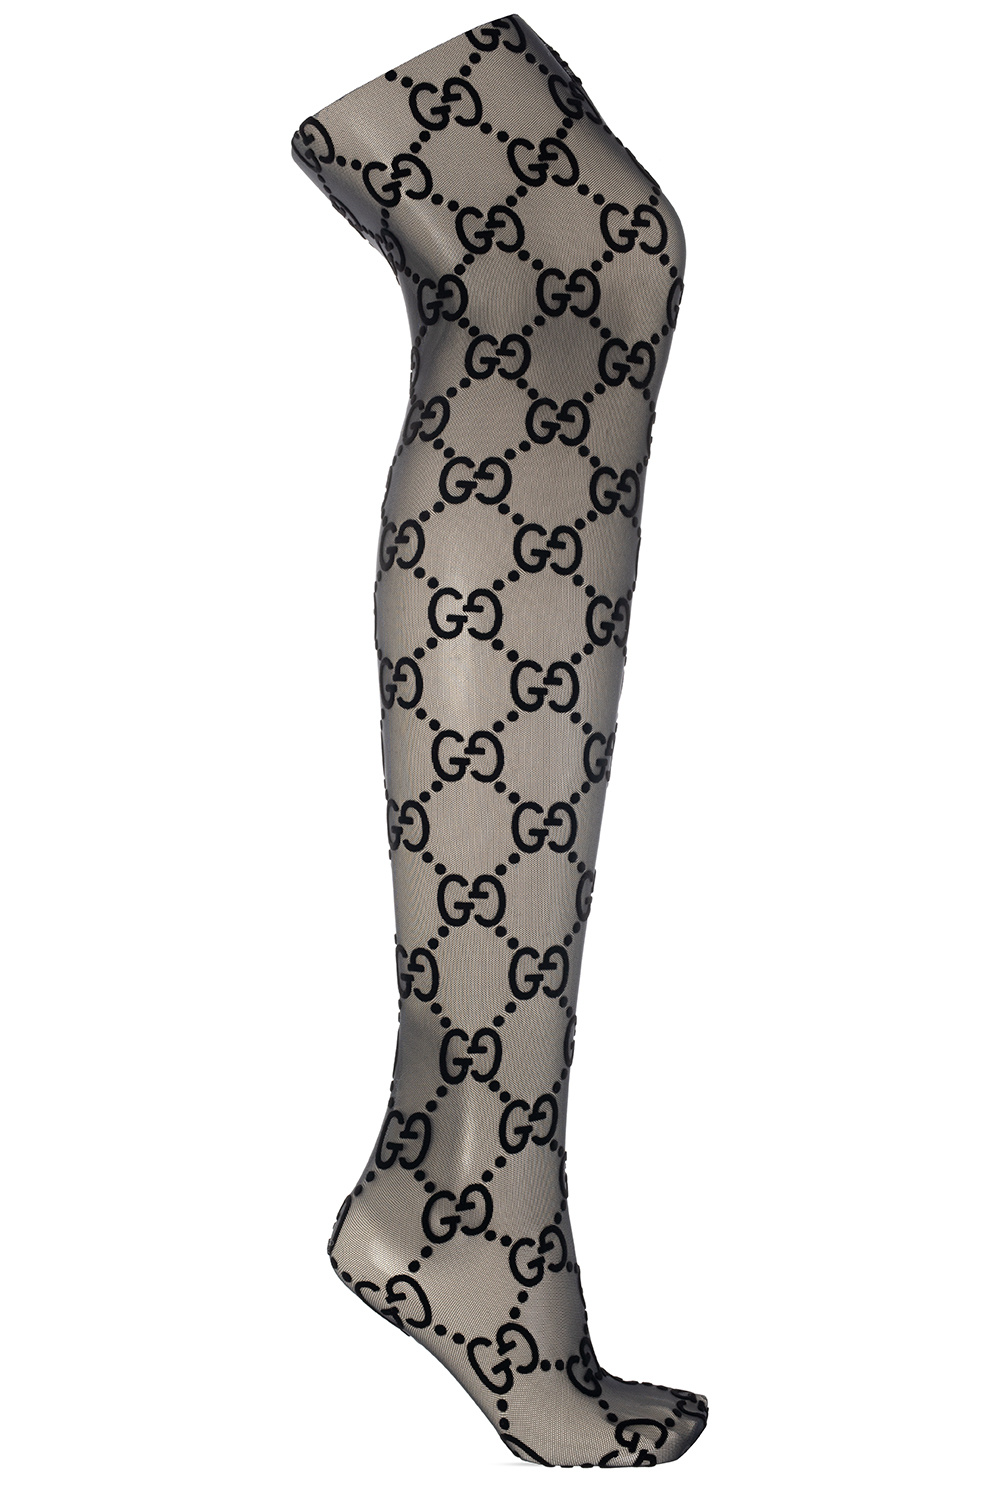 lv stockings for women gg logo